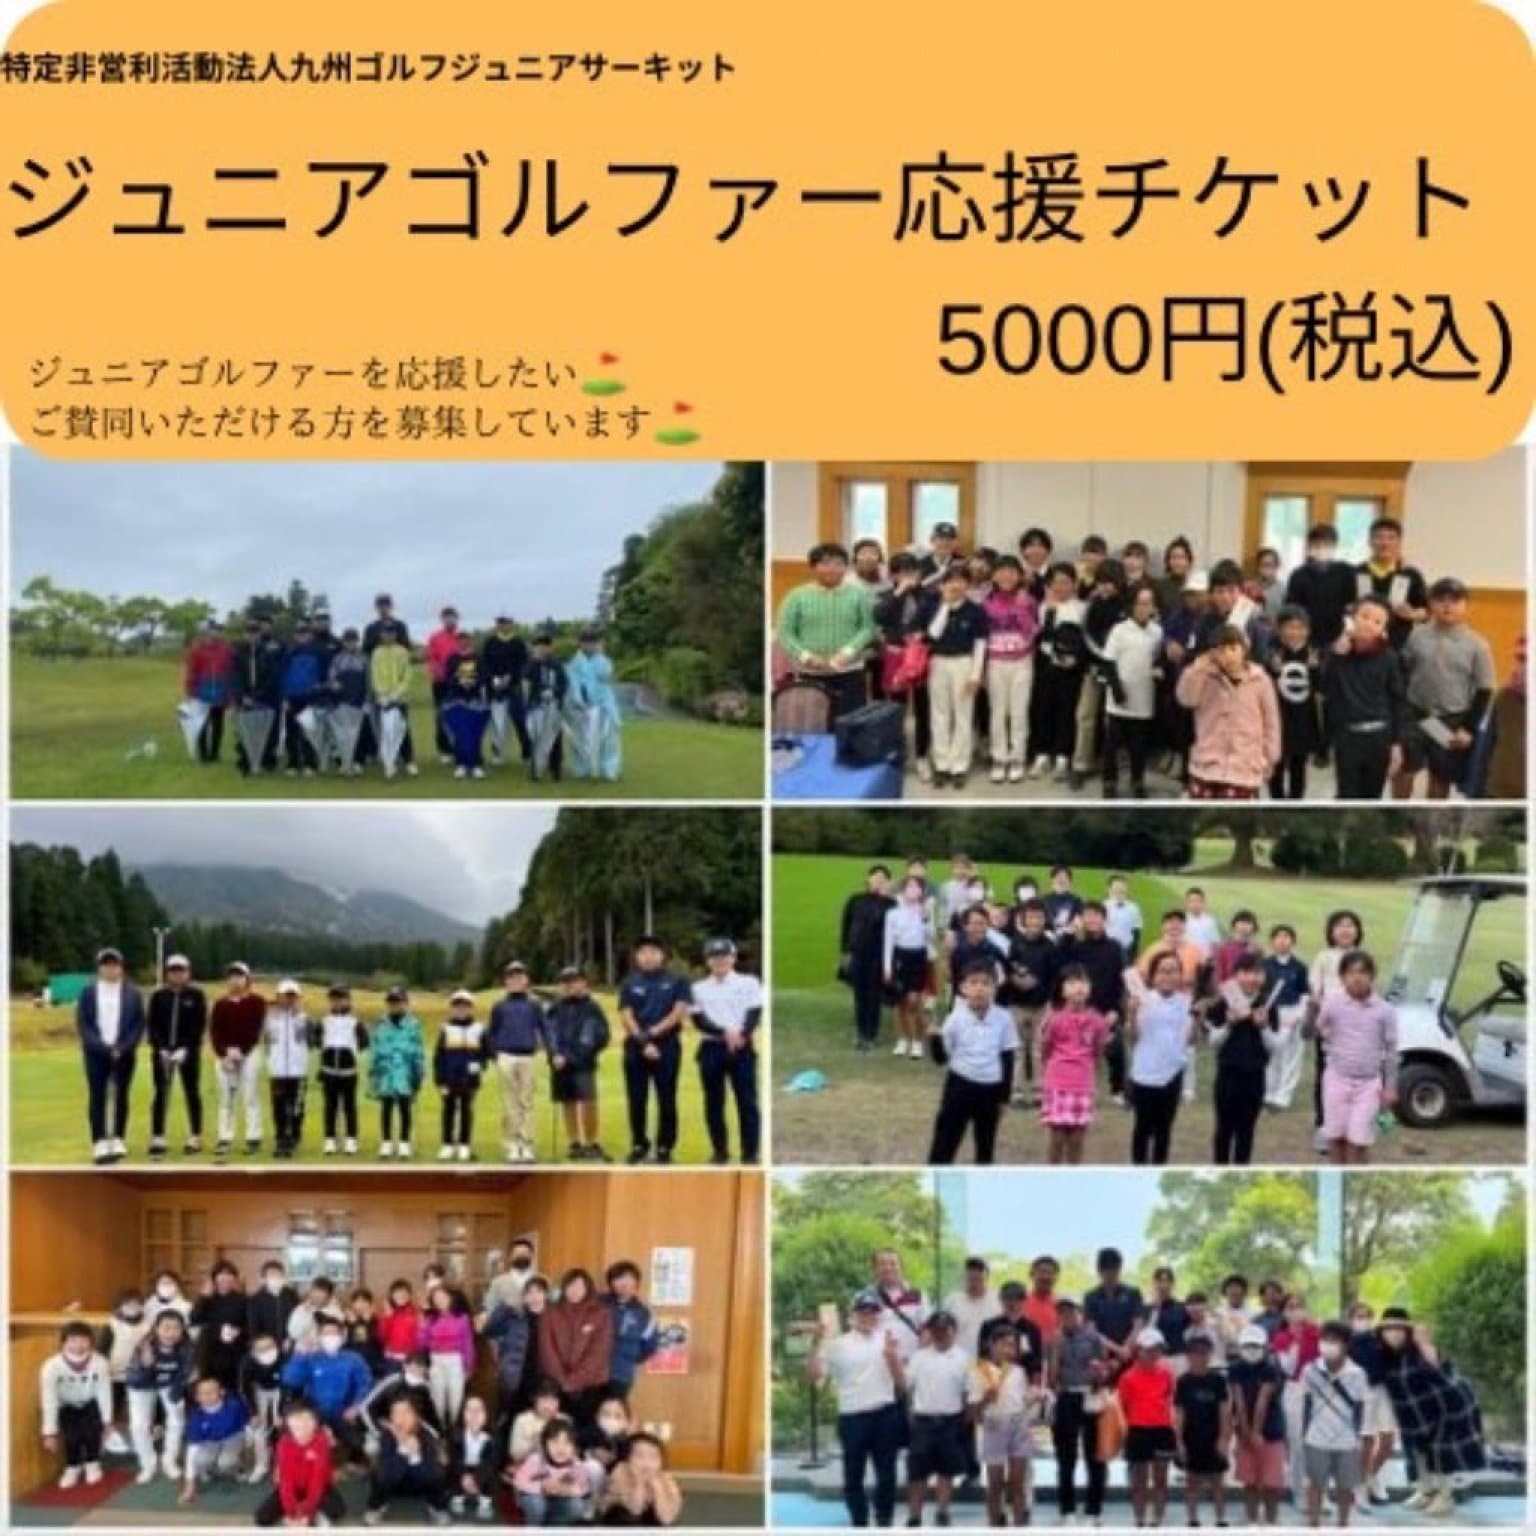 【5000円】ジュニアゴルファー応援チケット 高ポイント還元